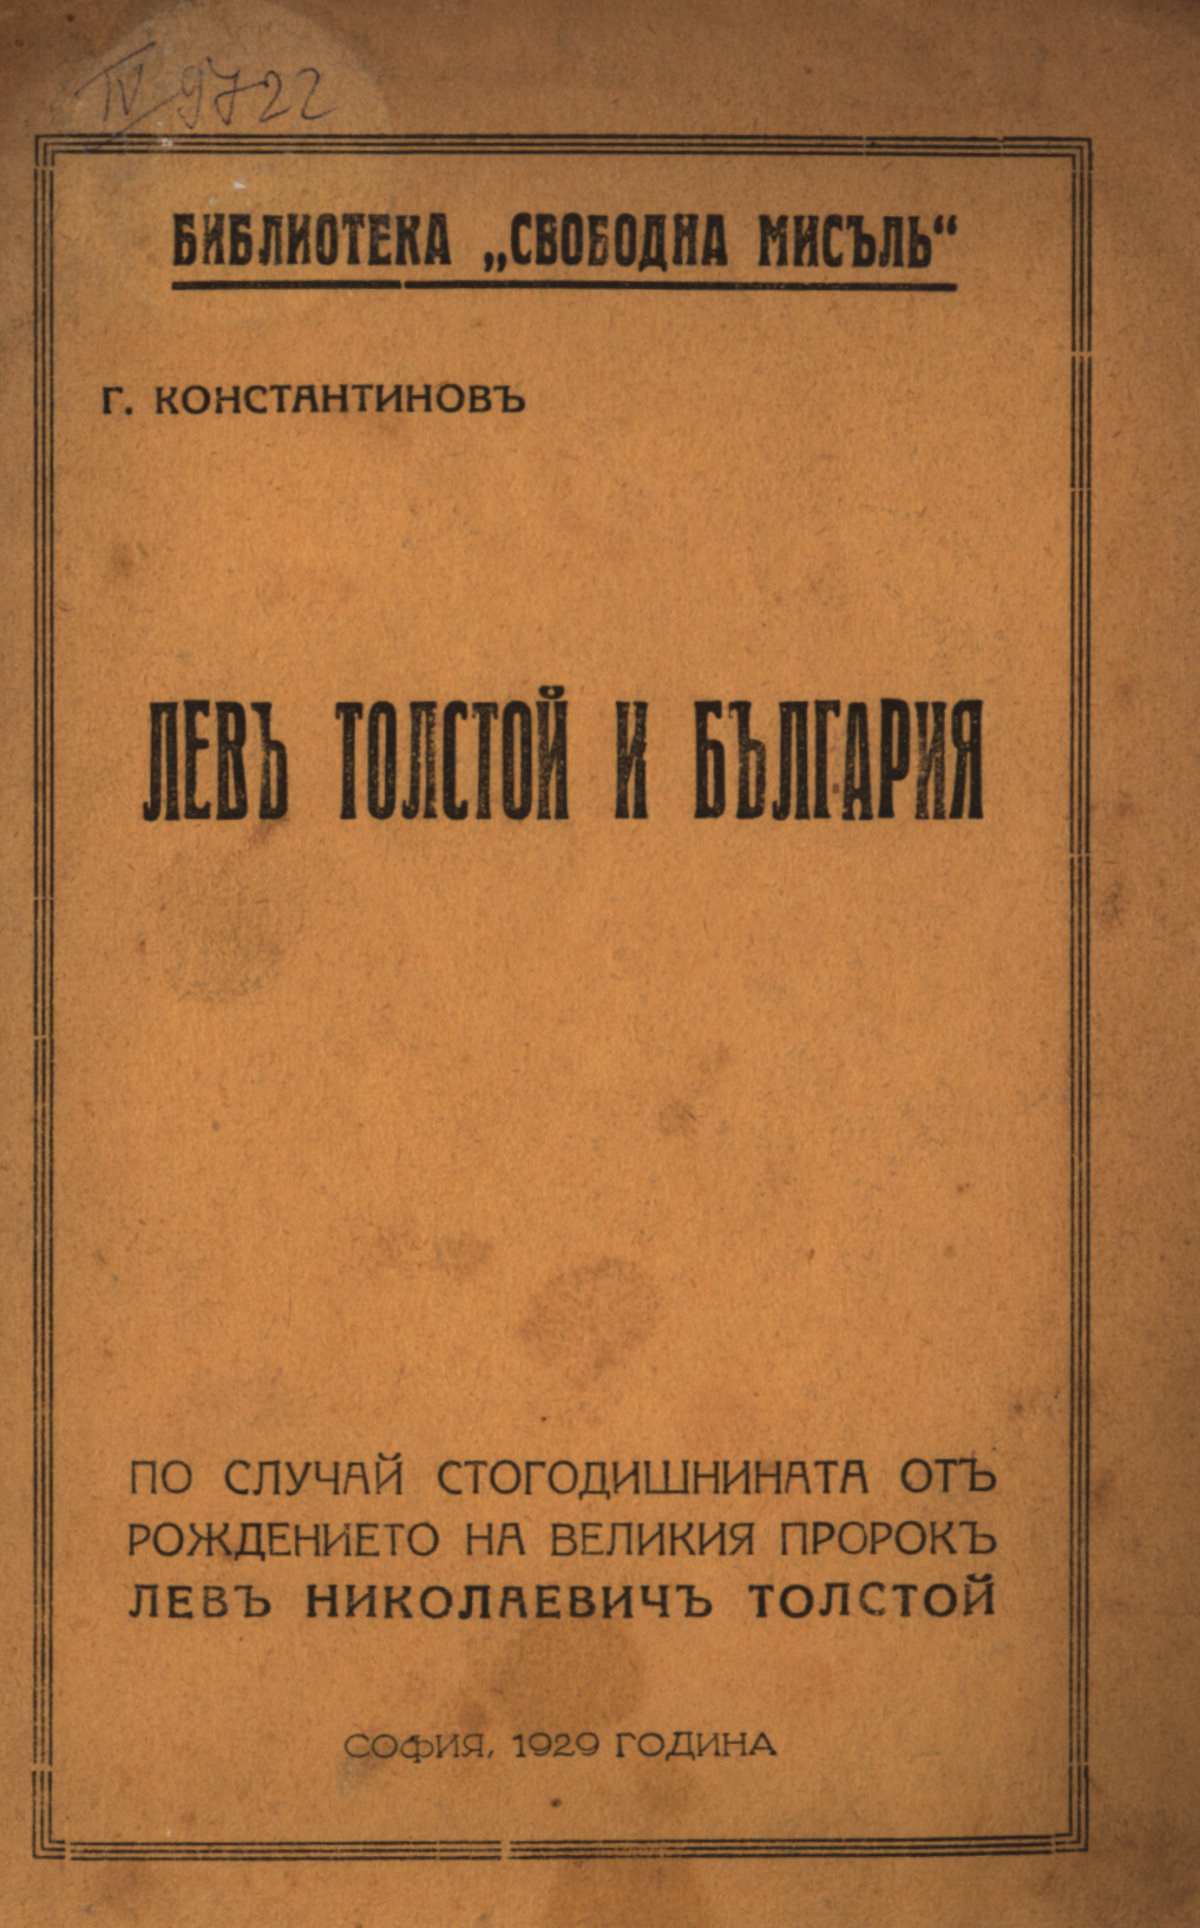 Лев Толстой и България